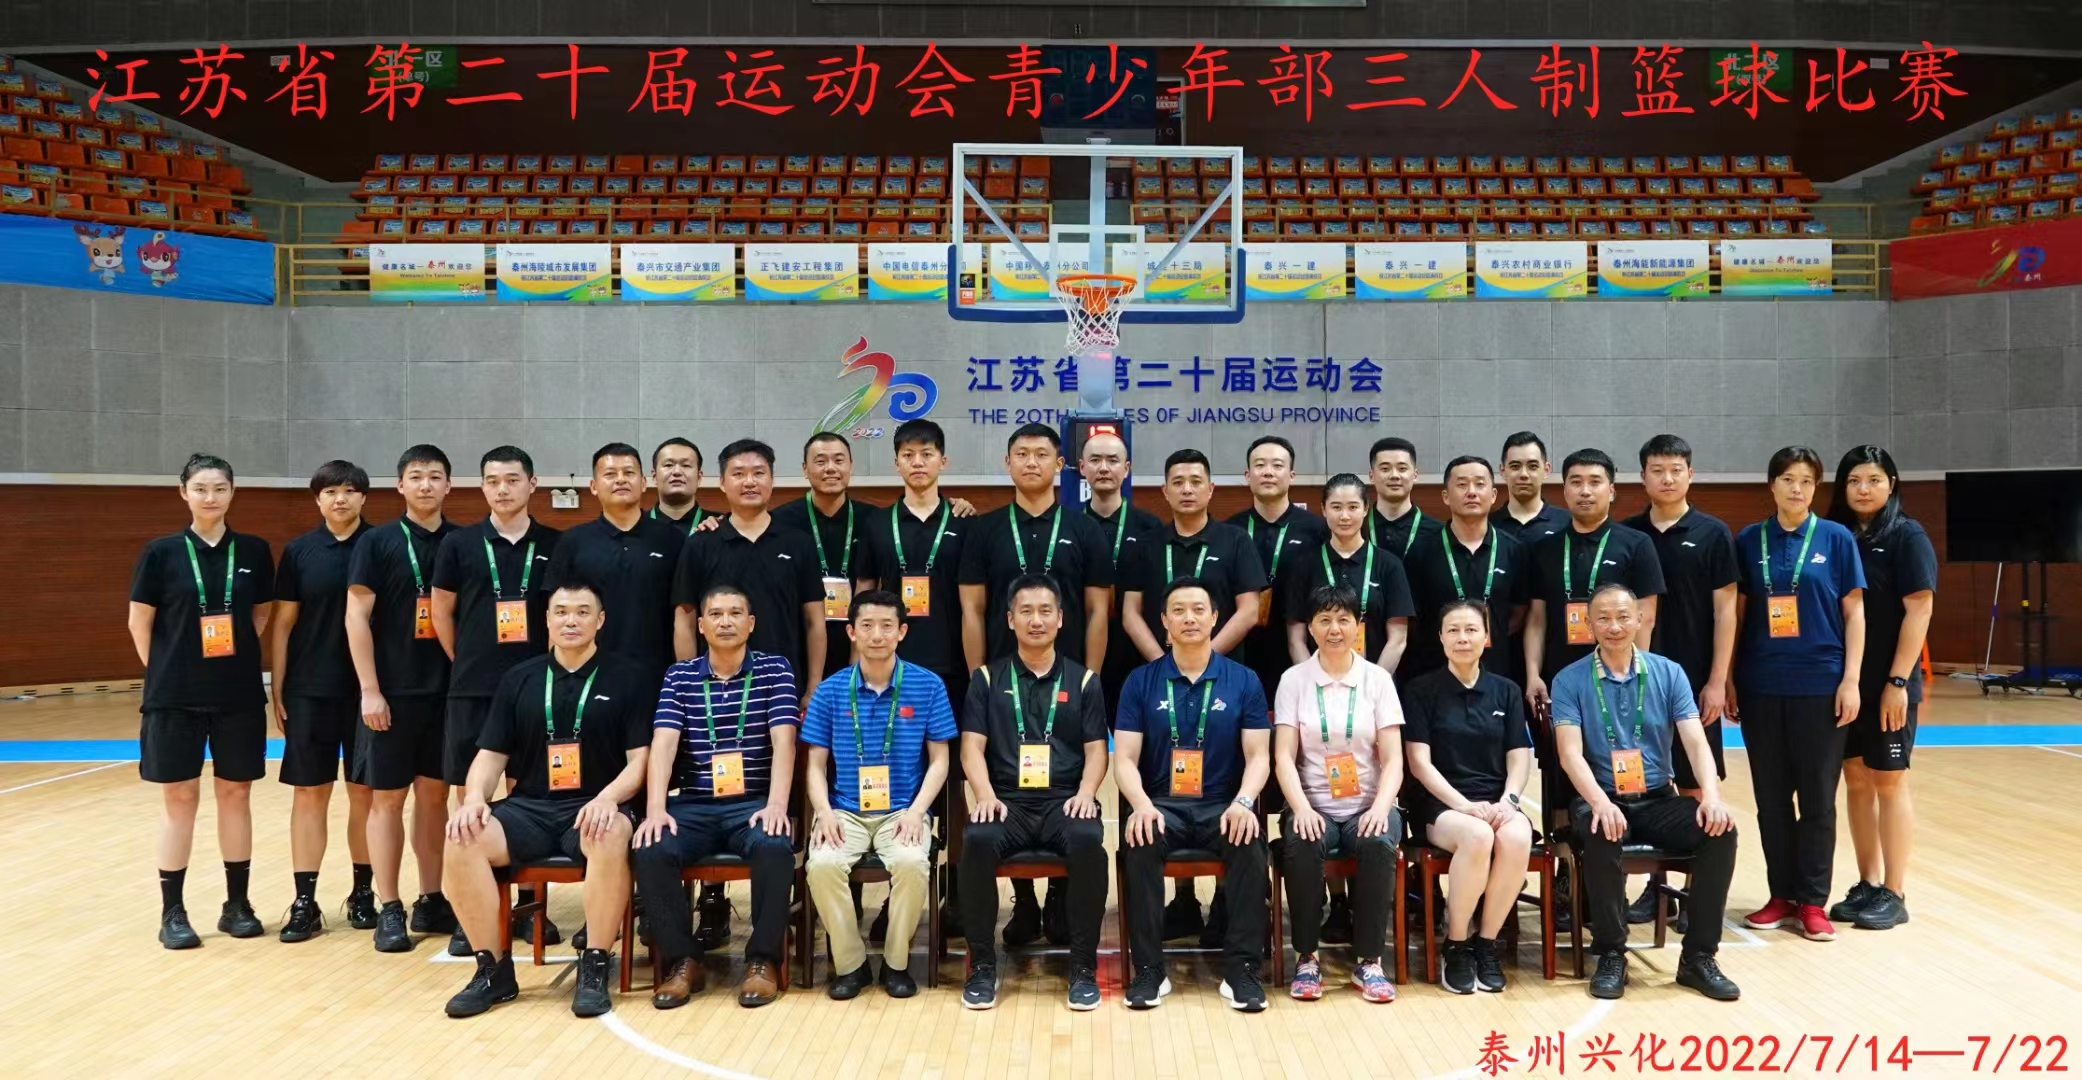 江苏省第二十届运动会青少年部三人制篮球比赛裁判员合影